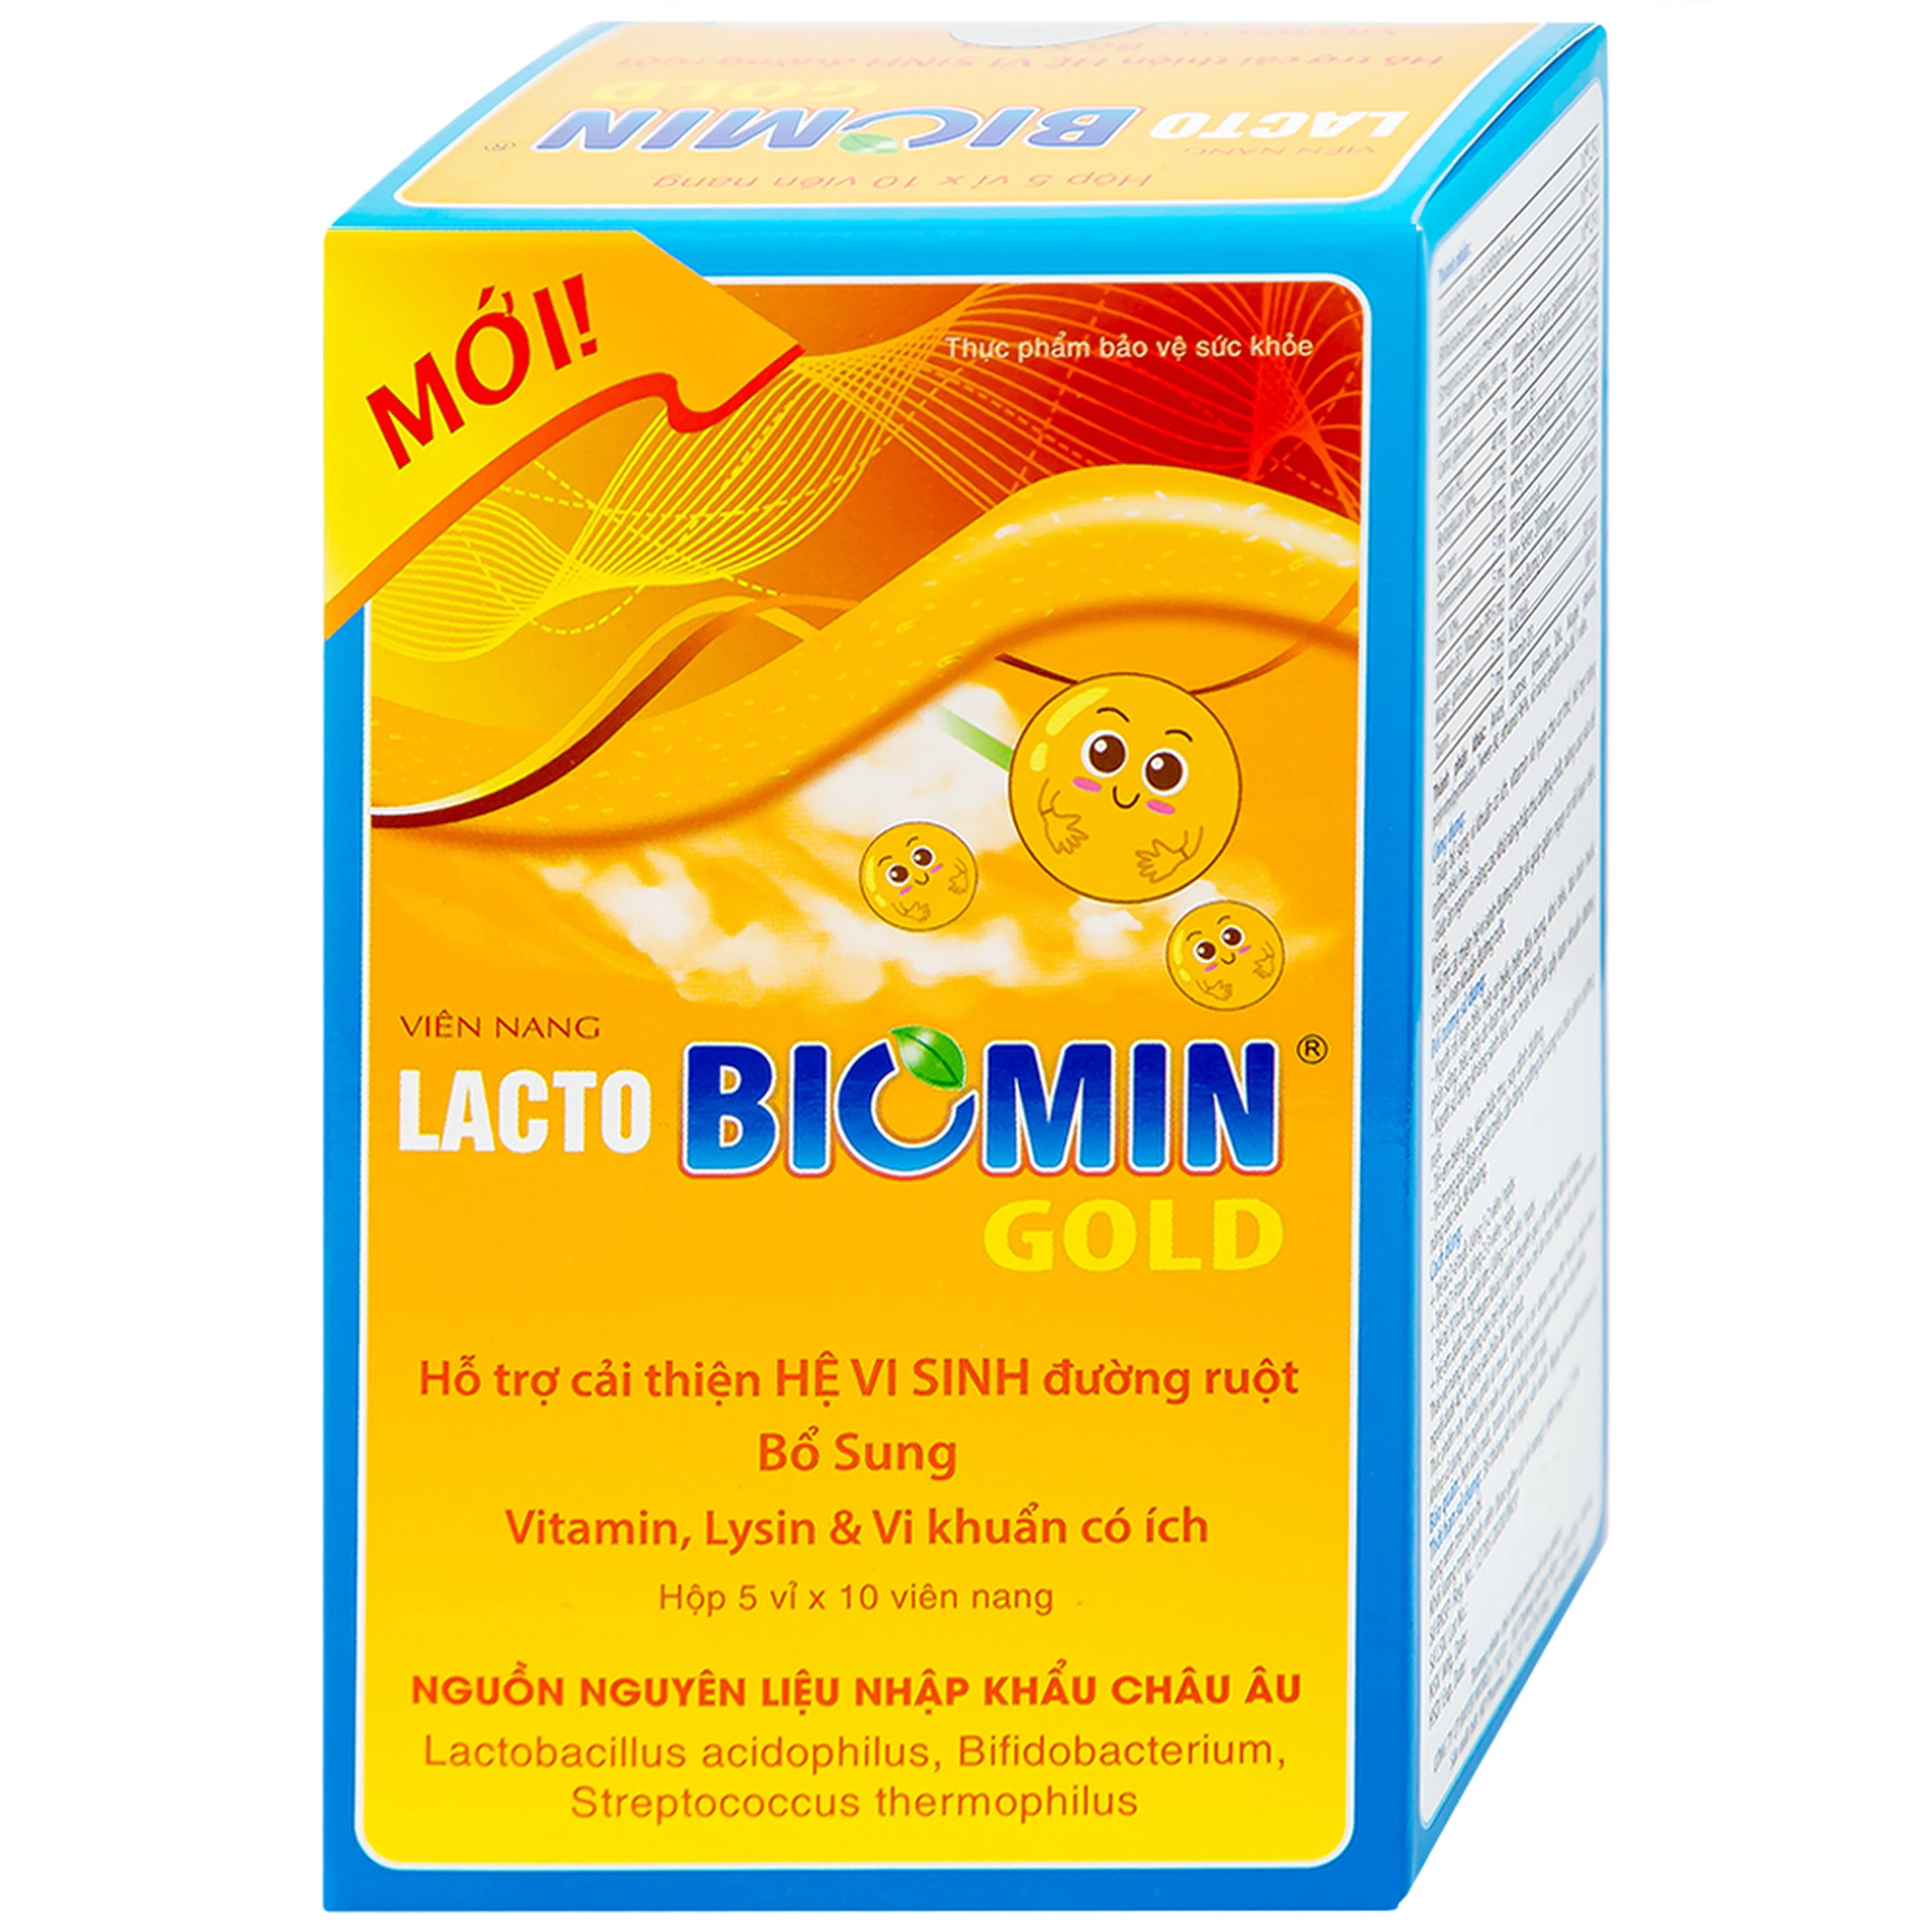 Viên uống Lacto Biomin Gold New HD Pharma hỗ trợ cải thiện hệ vi sinh đường ruột (5 vỉ x 10 viên)